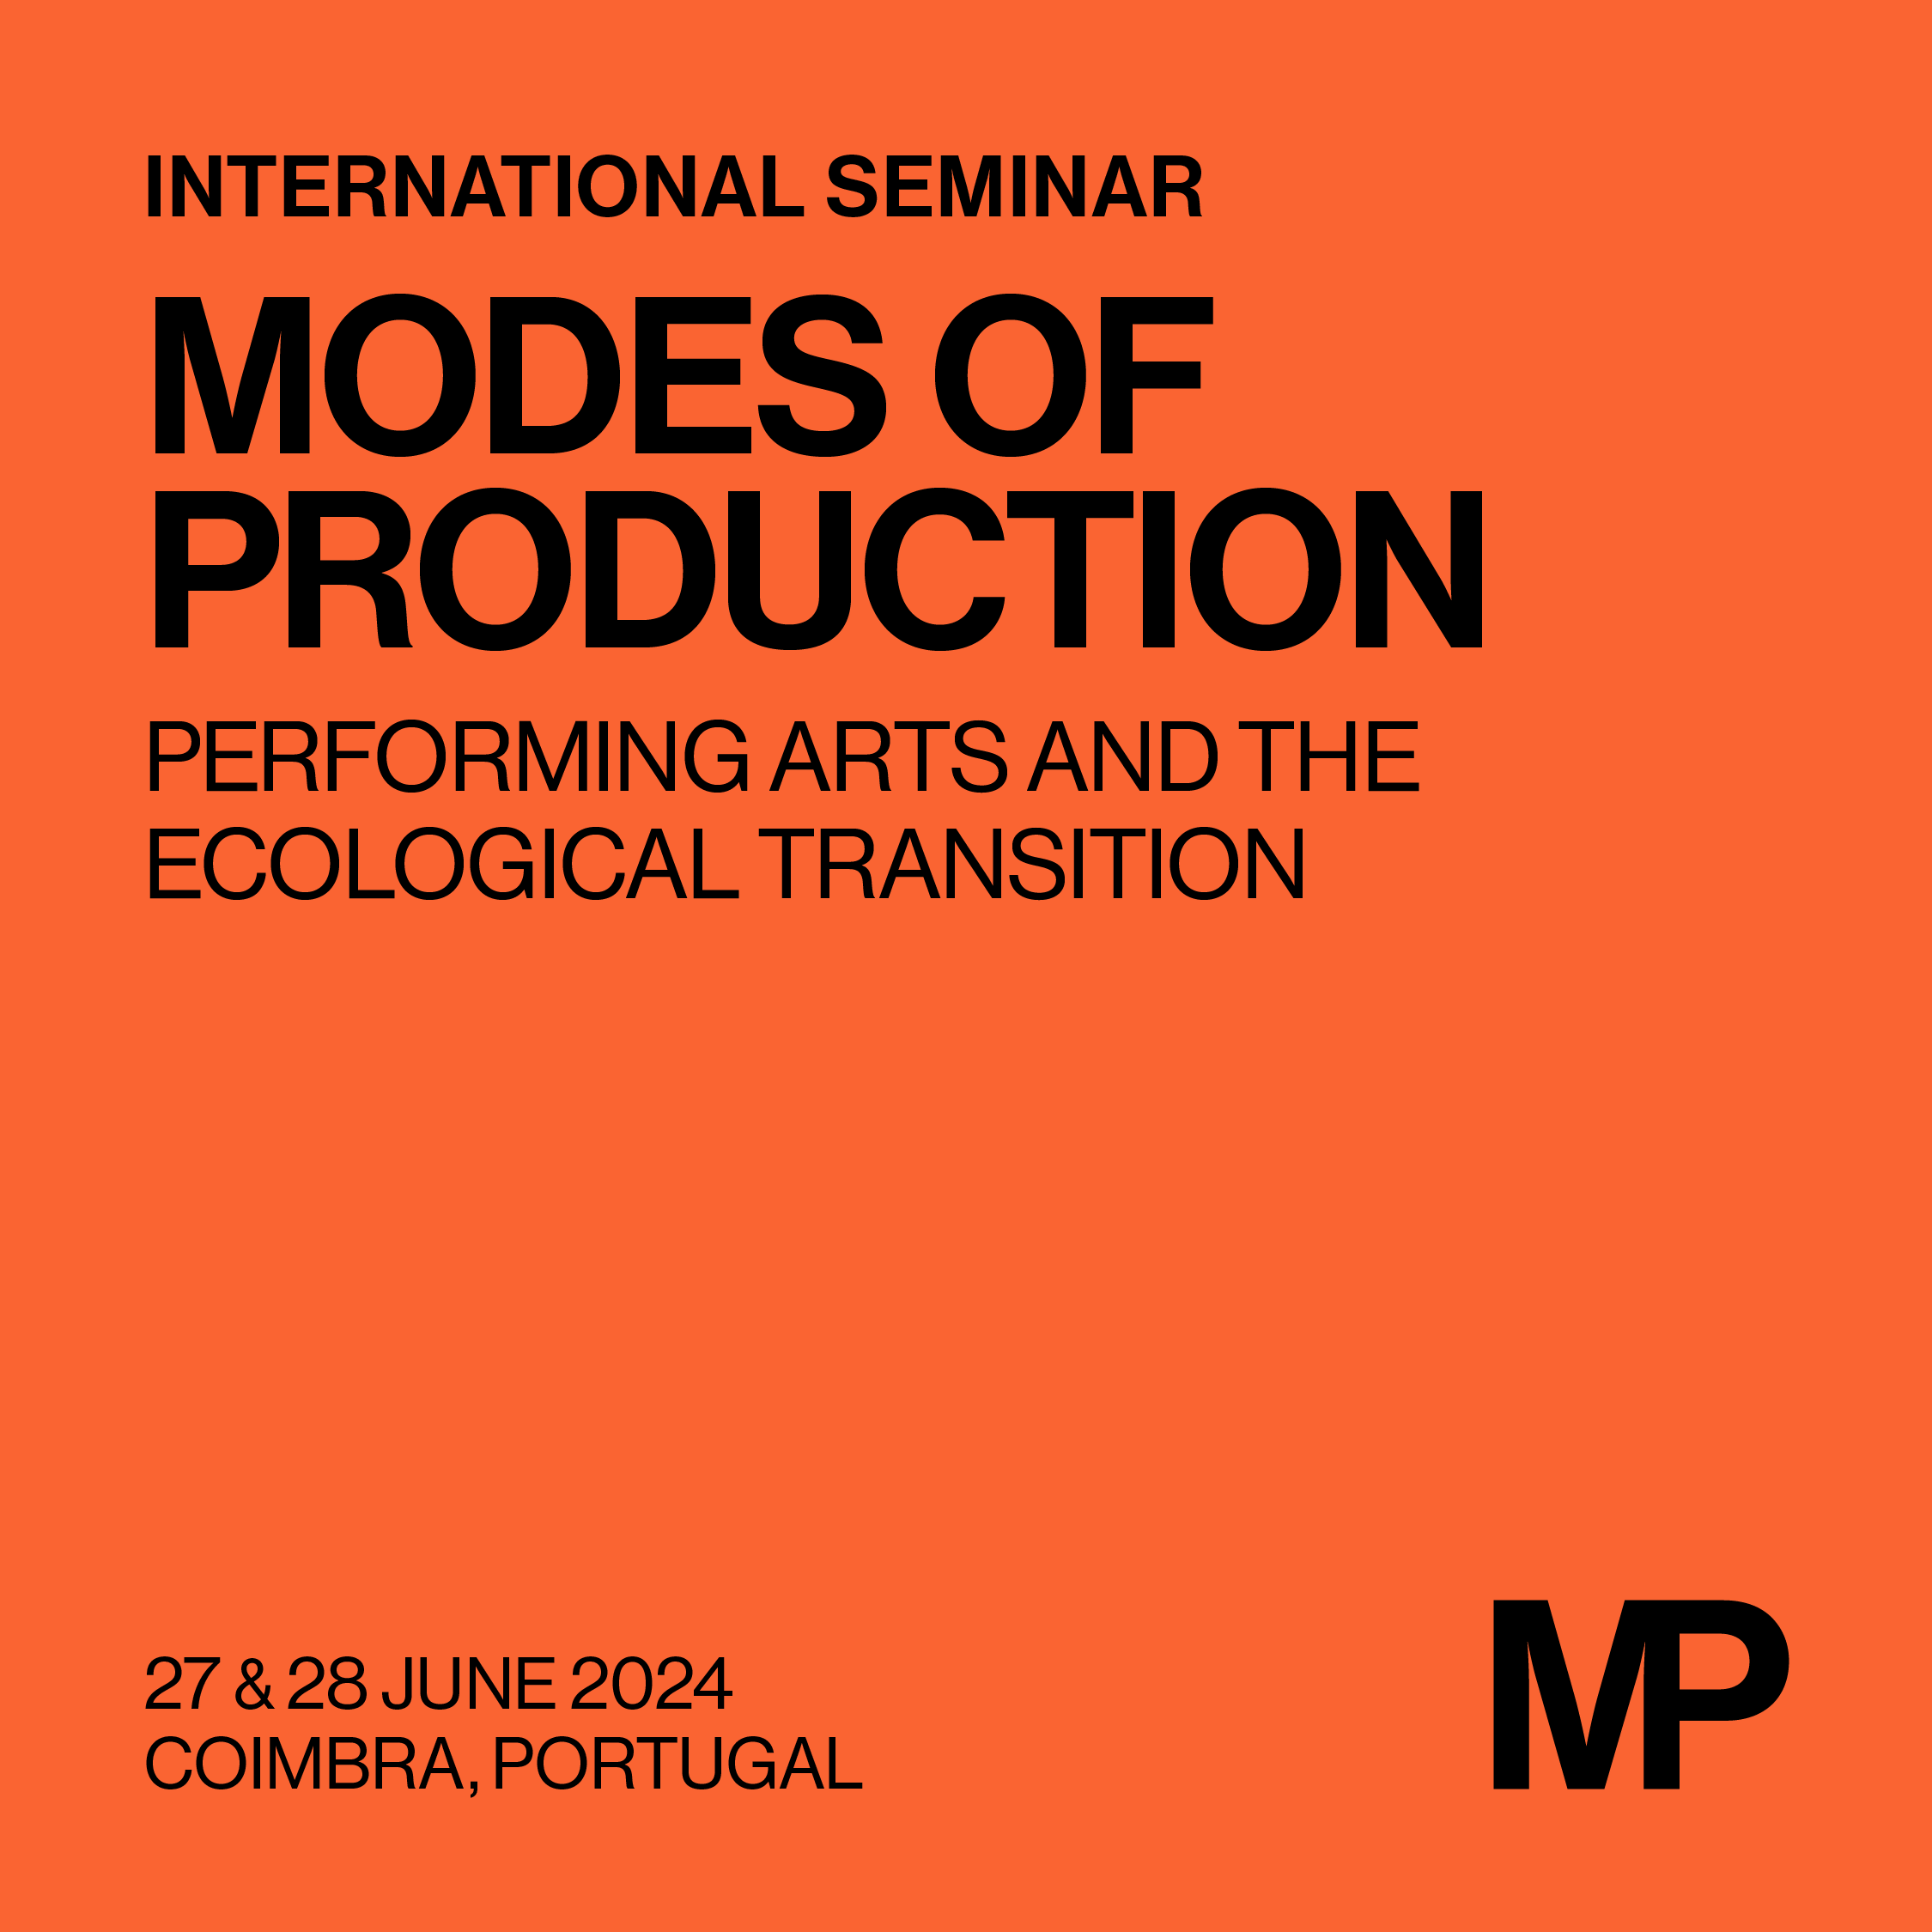 Internacional Seminar Modes of Production - Early Bird fee